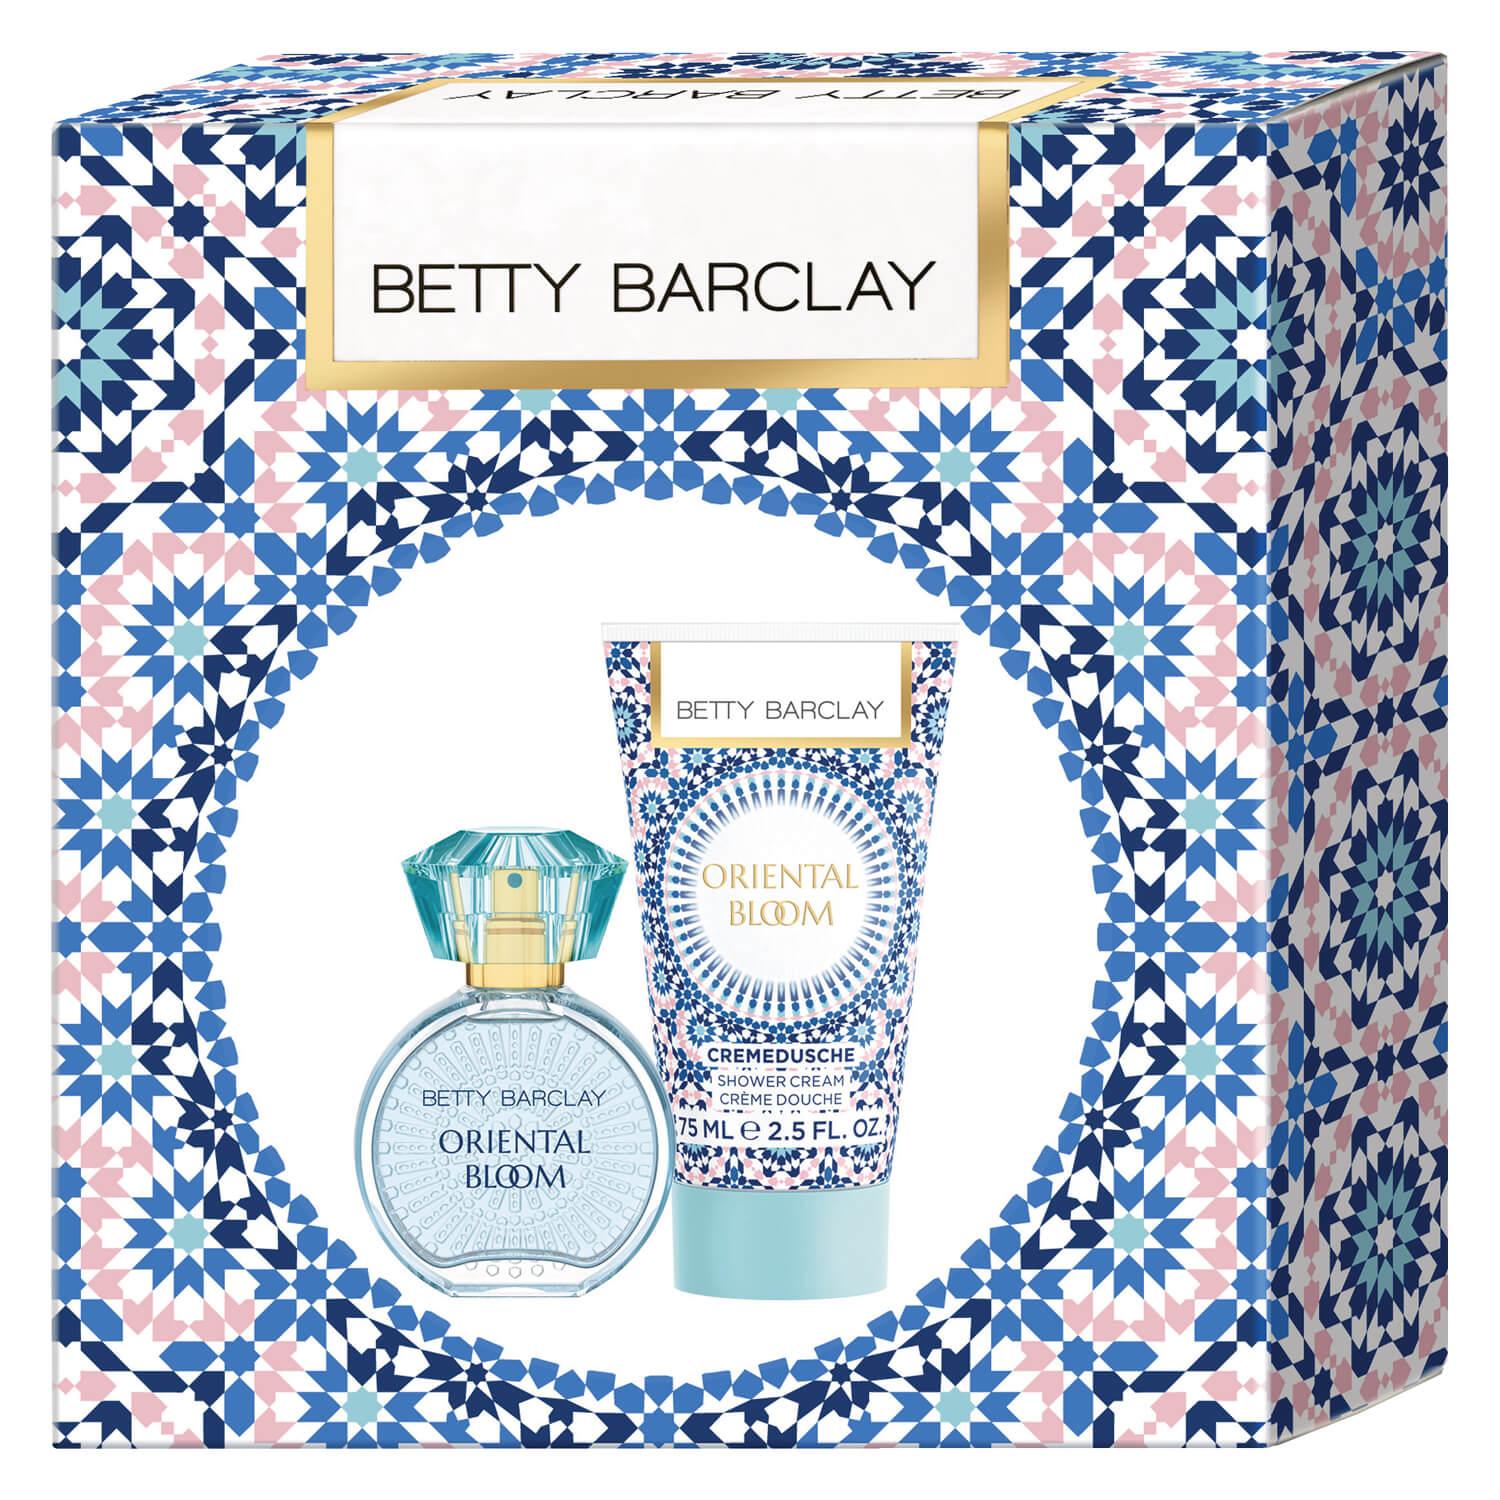 Betty Barclay - Oriental Bloom Eau de Toilette Set